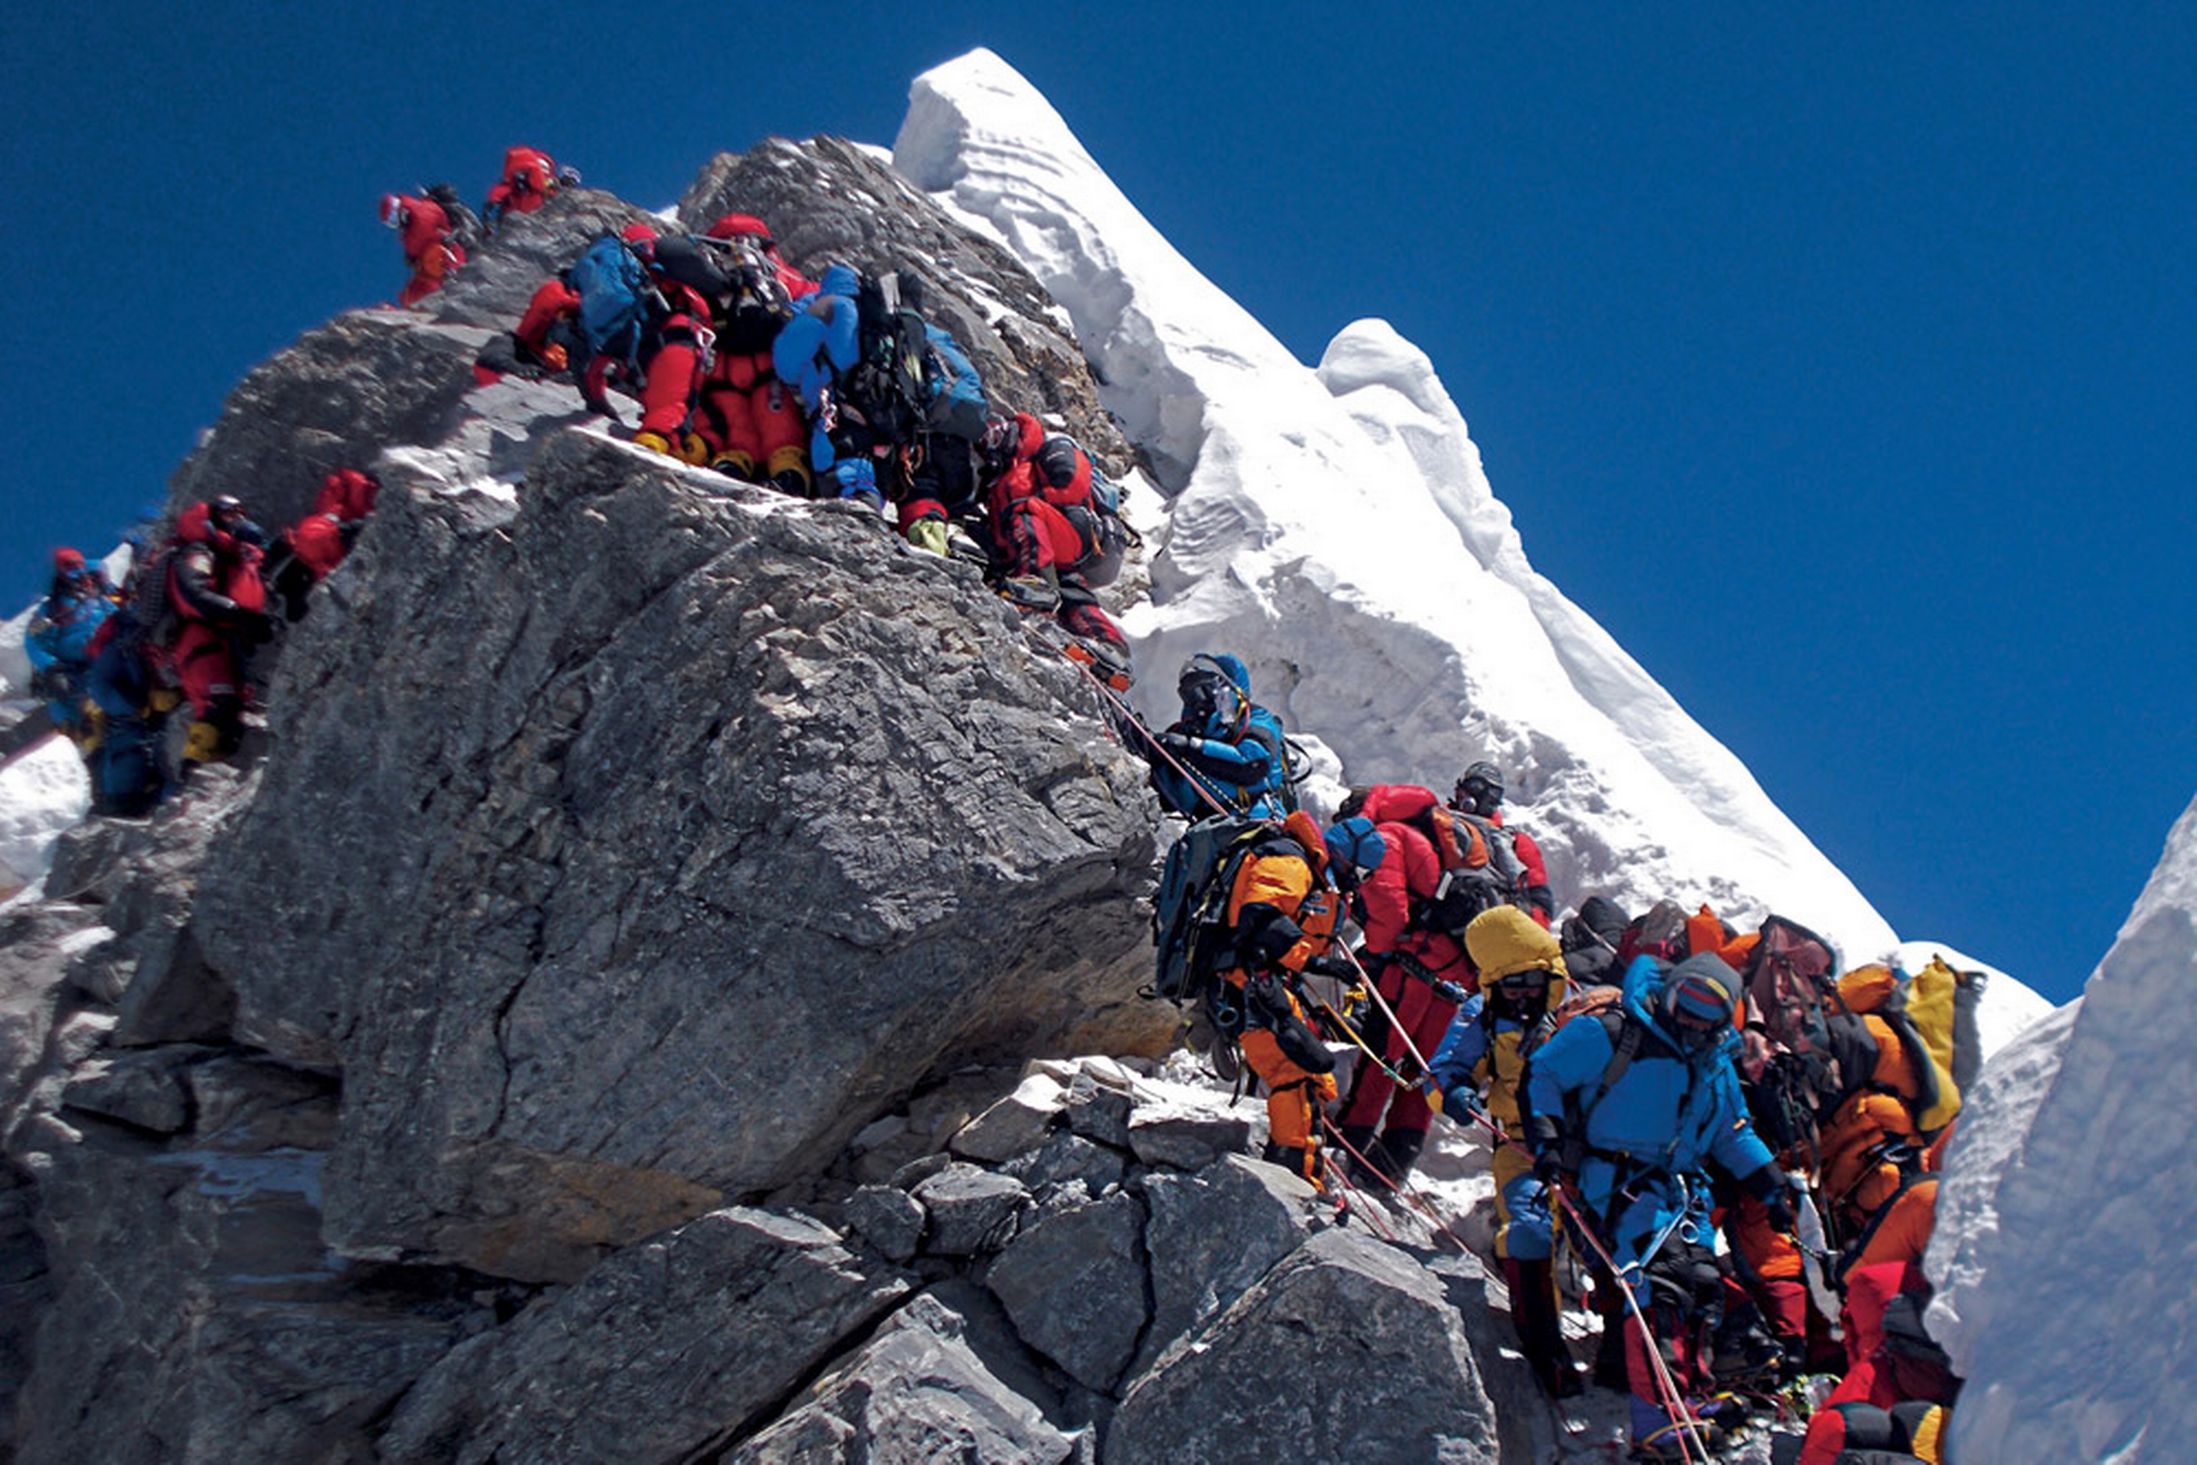  19 мая 2012: проход через Ступень Хиллари, узкому, 12-и метровому скальному участку, чуть ниже вершины Эвереста. В этой очереди своего прохода альпинисты ожидали более 2-х часов! В этот день на вершину Эвереста взошли 234 человека и четыре человека погибли